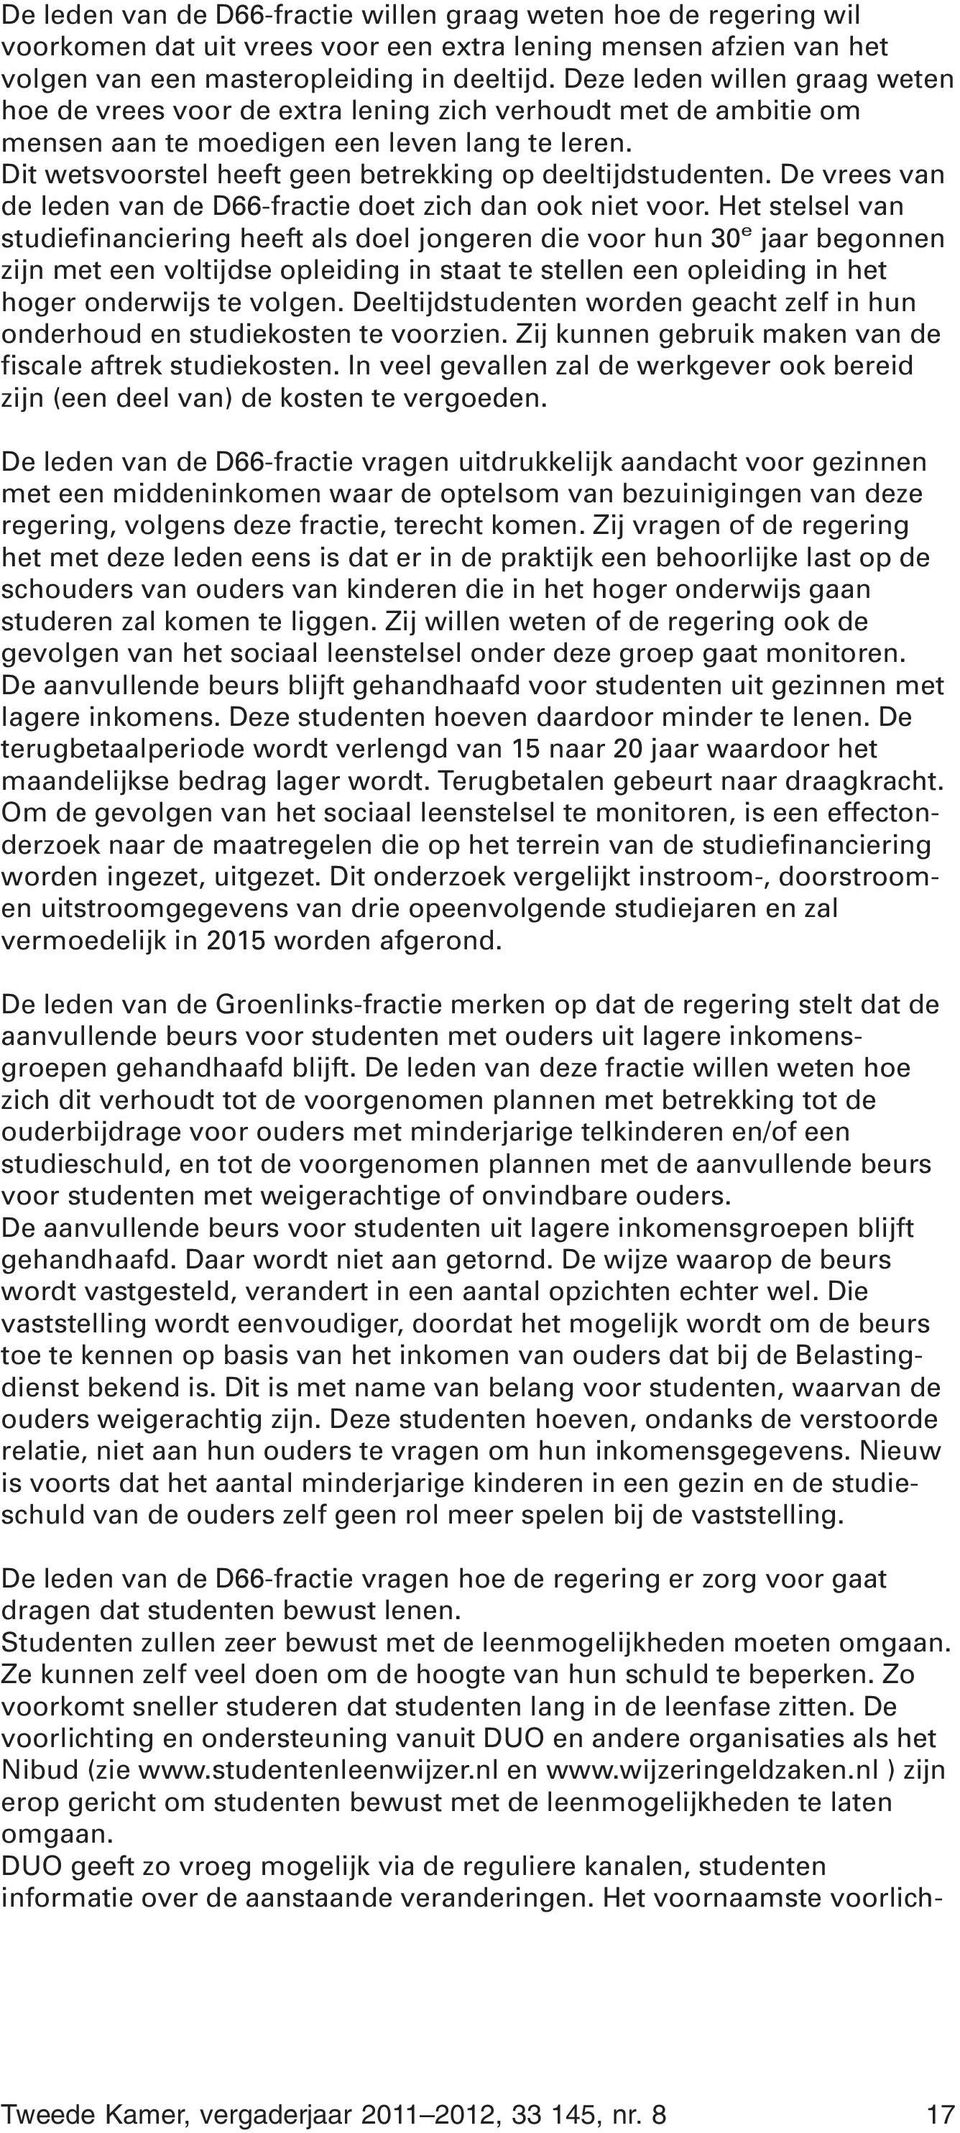 Dit wetsvoorstel heeft geen betrekking op deeltijdstudenten. De vrees van de leden van de D66-fractie doet zich dan ook niet voor.